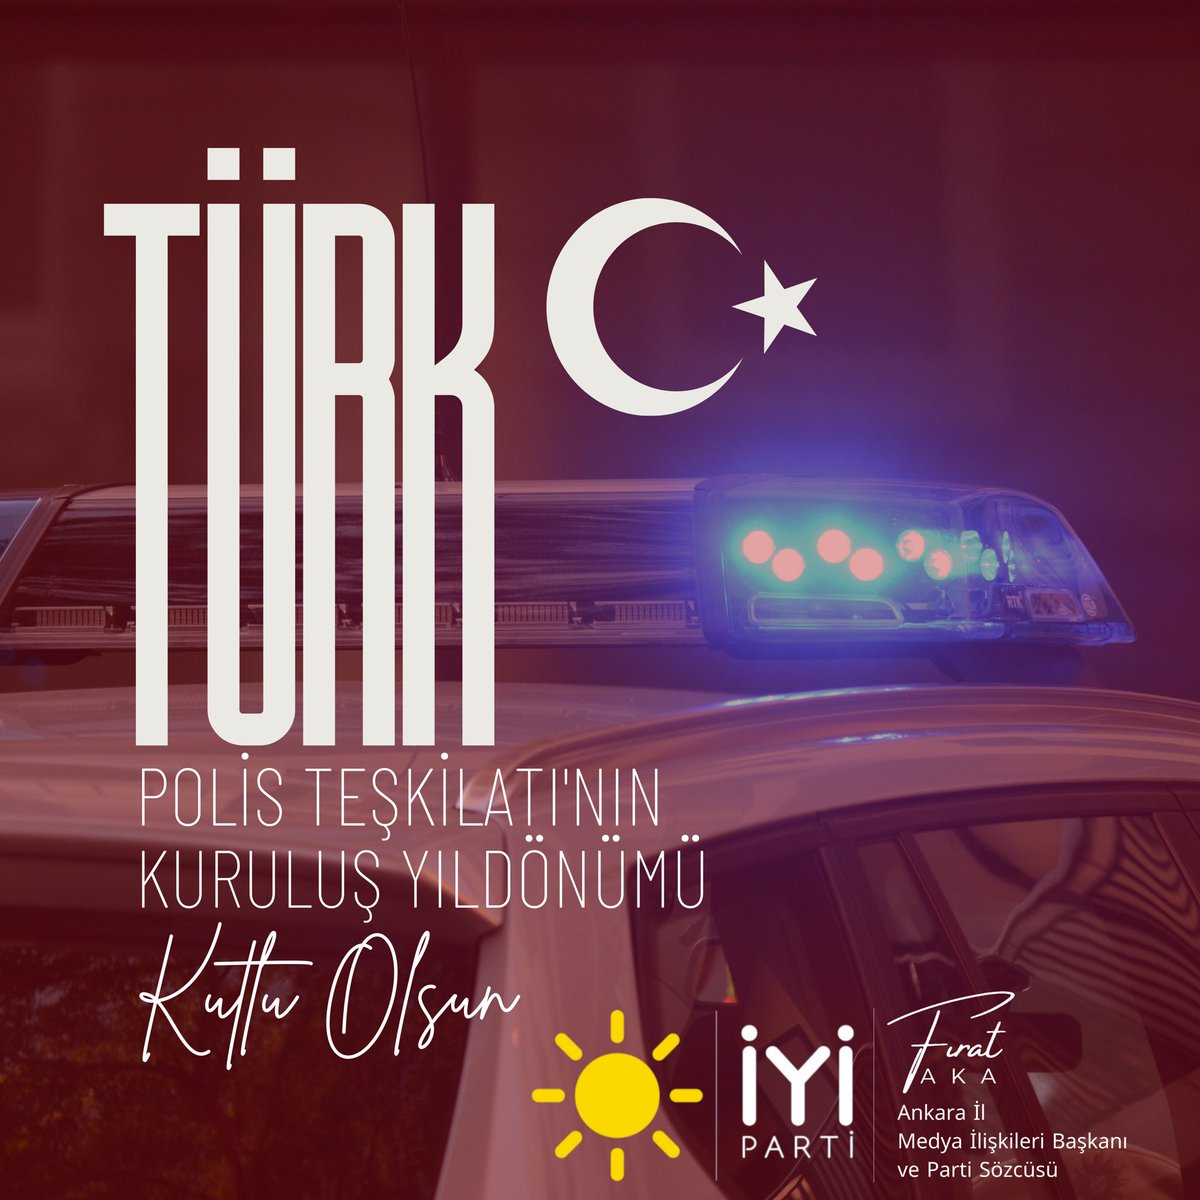 #TürkPolisTeşkilatı ‘nın kuruluşunun 179. yıl dönümünü kutlu olsun.

#PolisTeskilatı179Yasında 🇹🇷